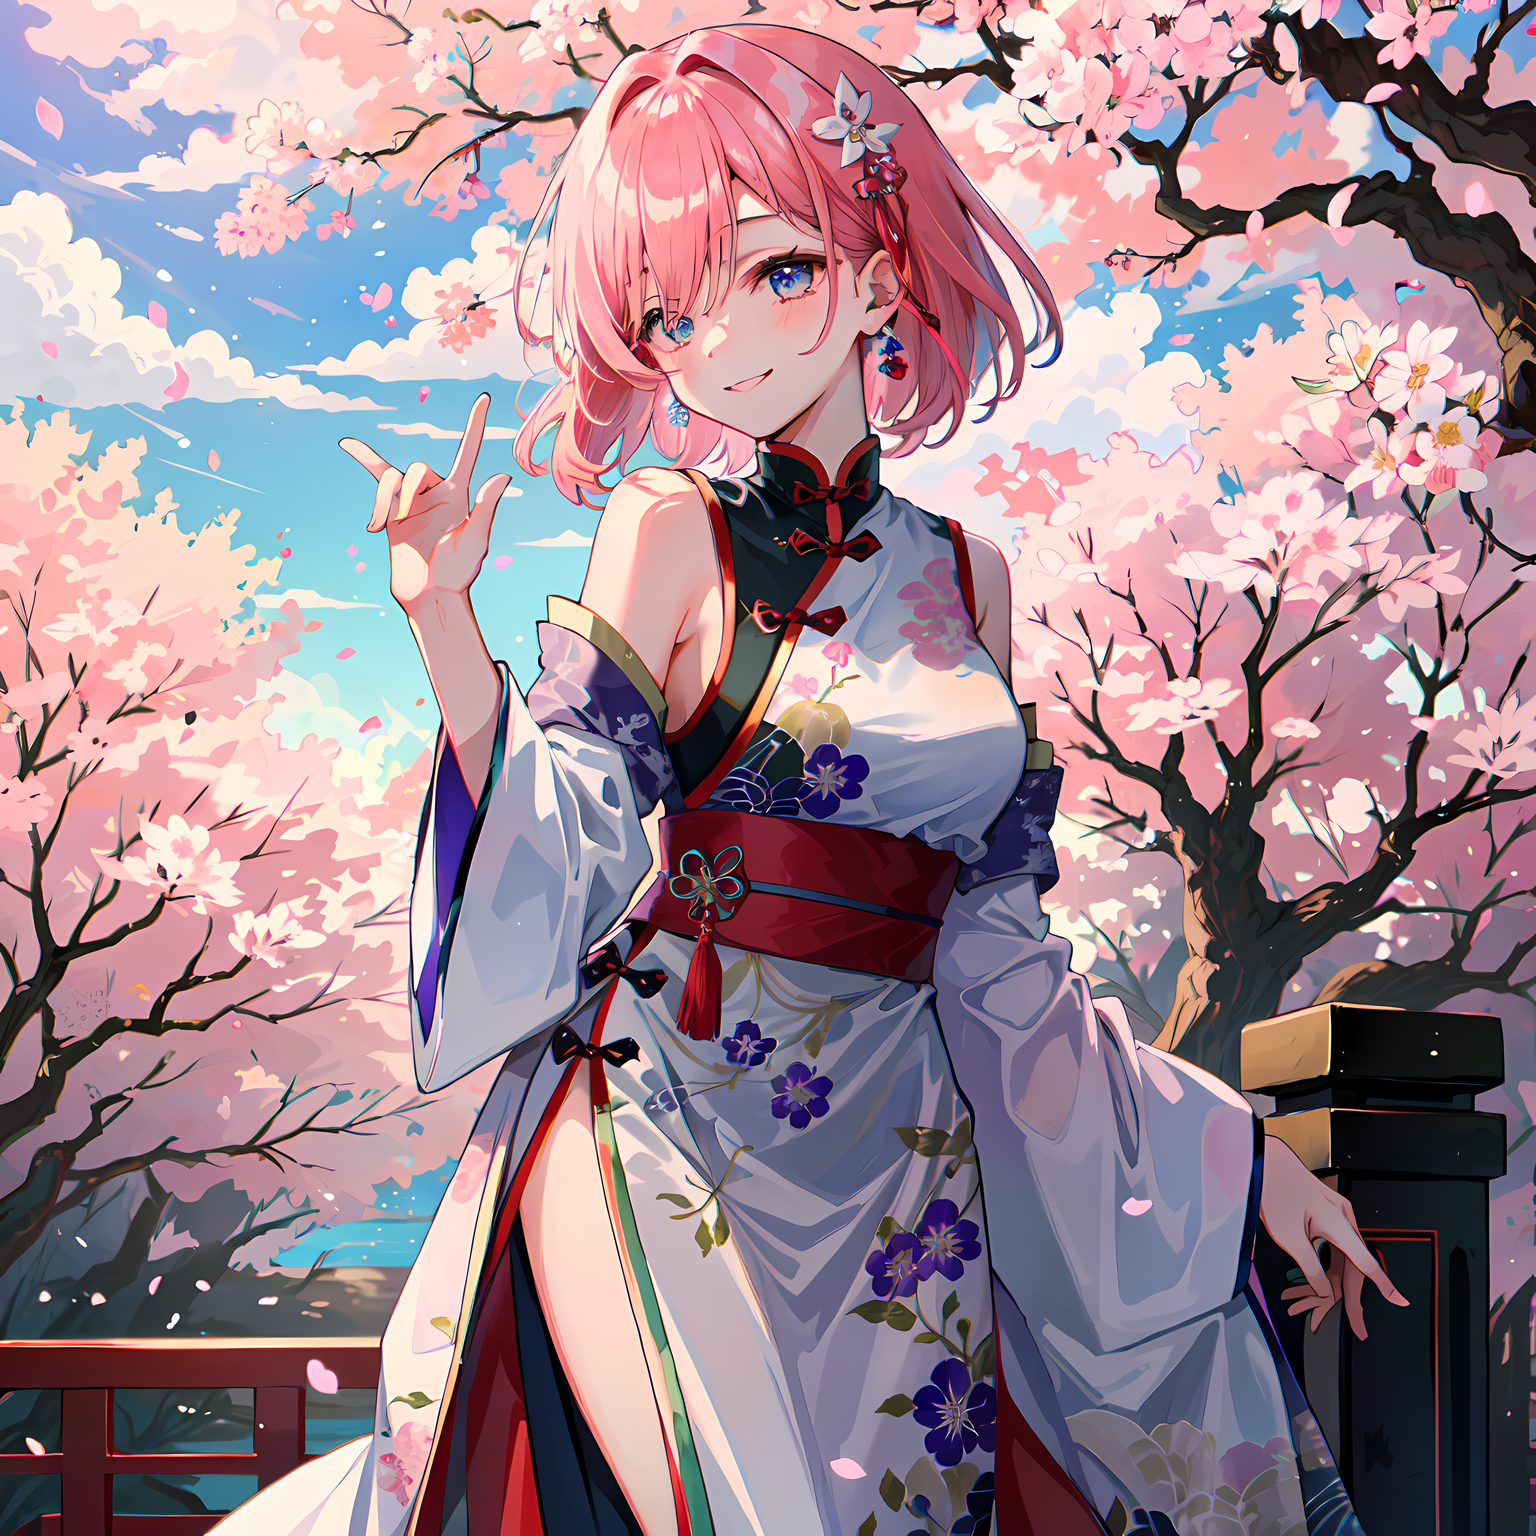 樱花树下，粉发少女迎风舞。那就叫樱舞吧。